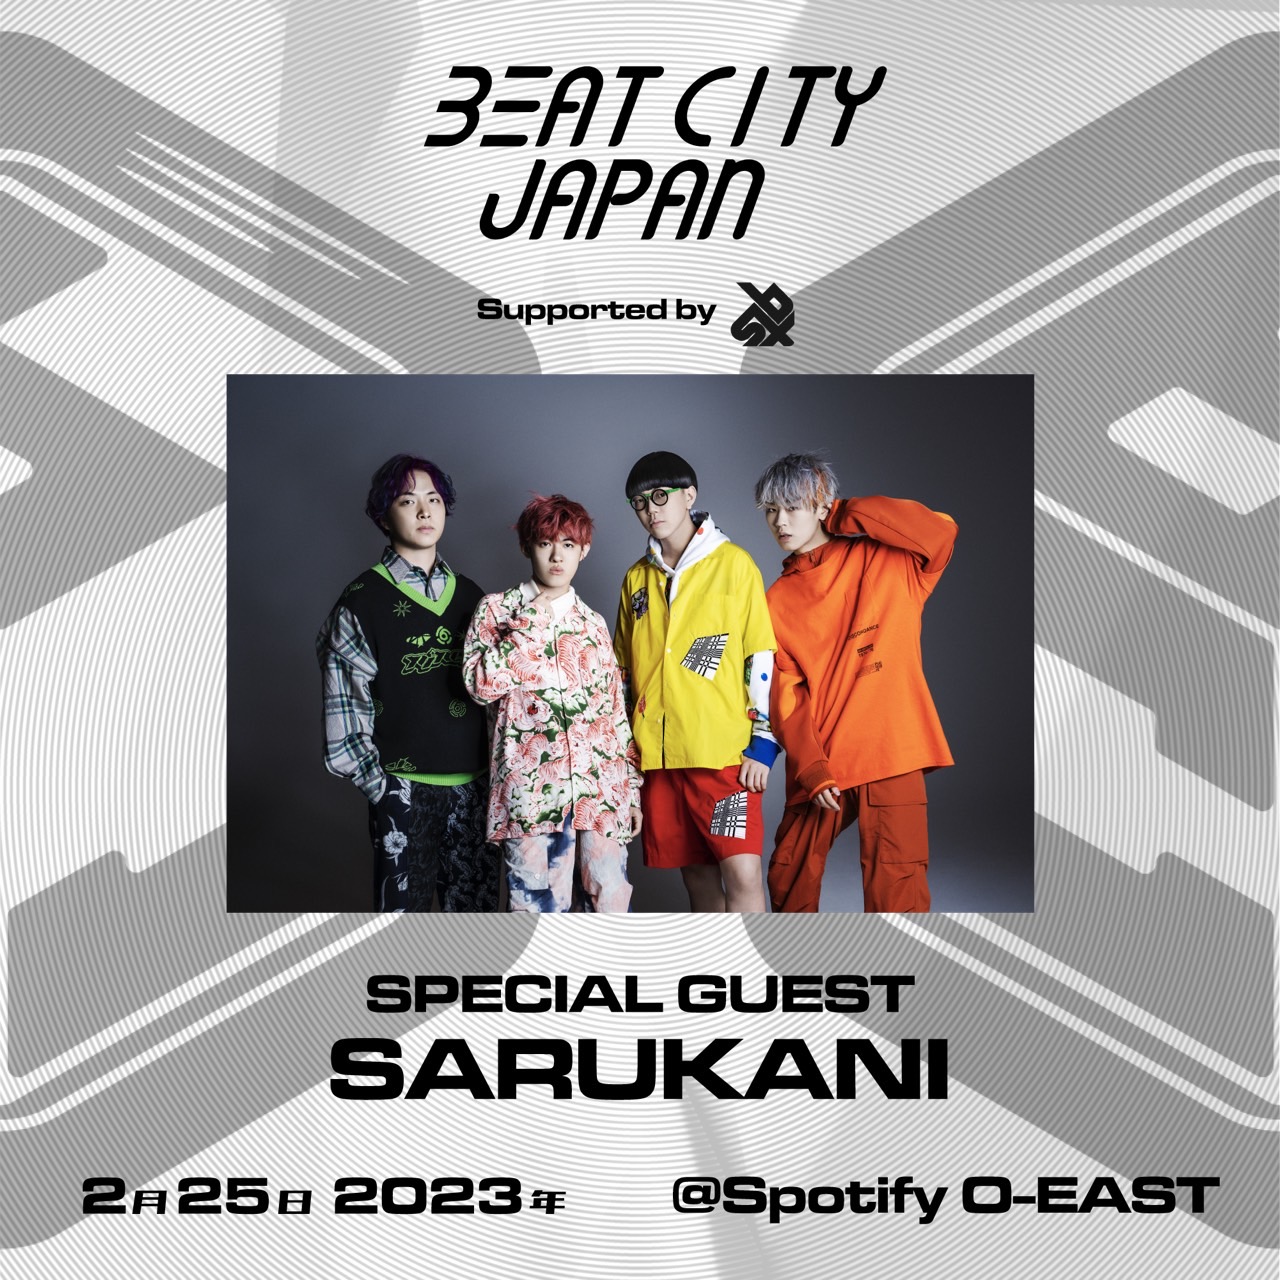 【公演終了】”BEATCITY JAPAN 2023 Supported by Swissbeatbox”